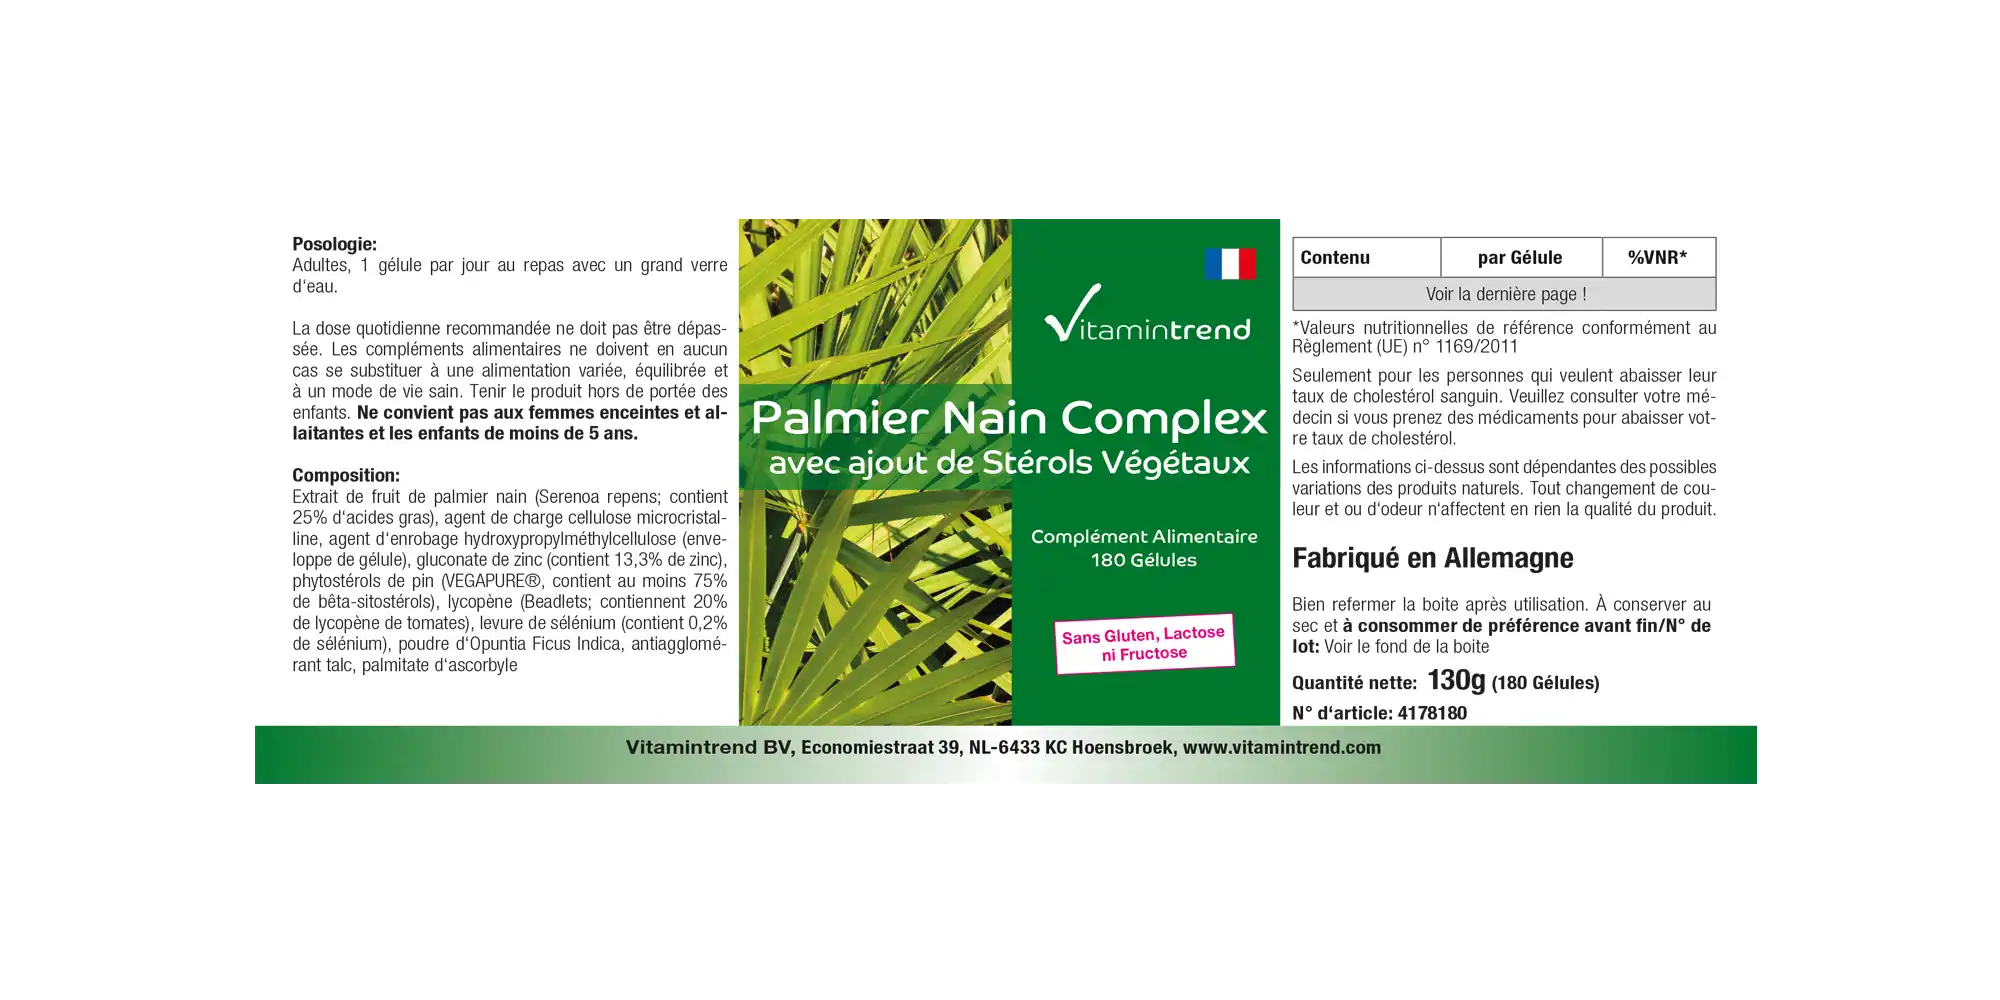 Palmier nain Complexe - vegan - 180 gélules - paquet familial